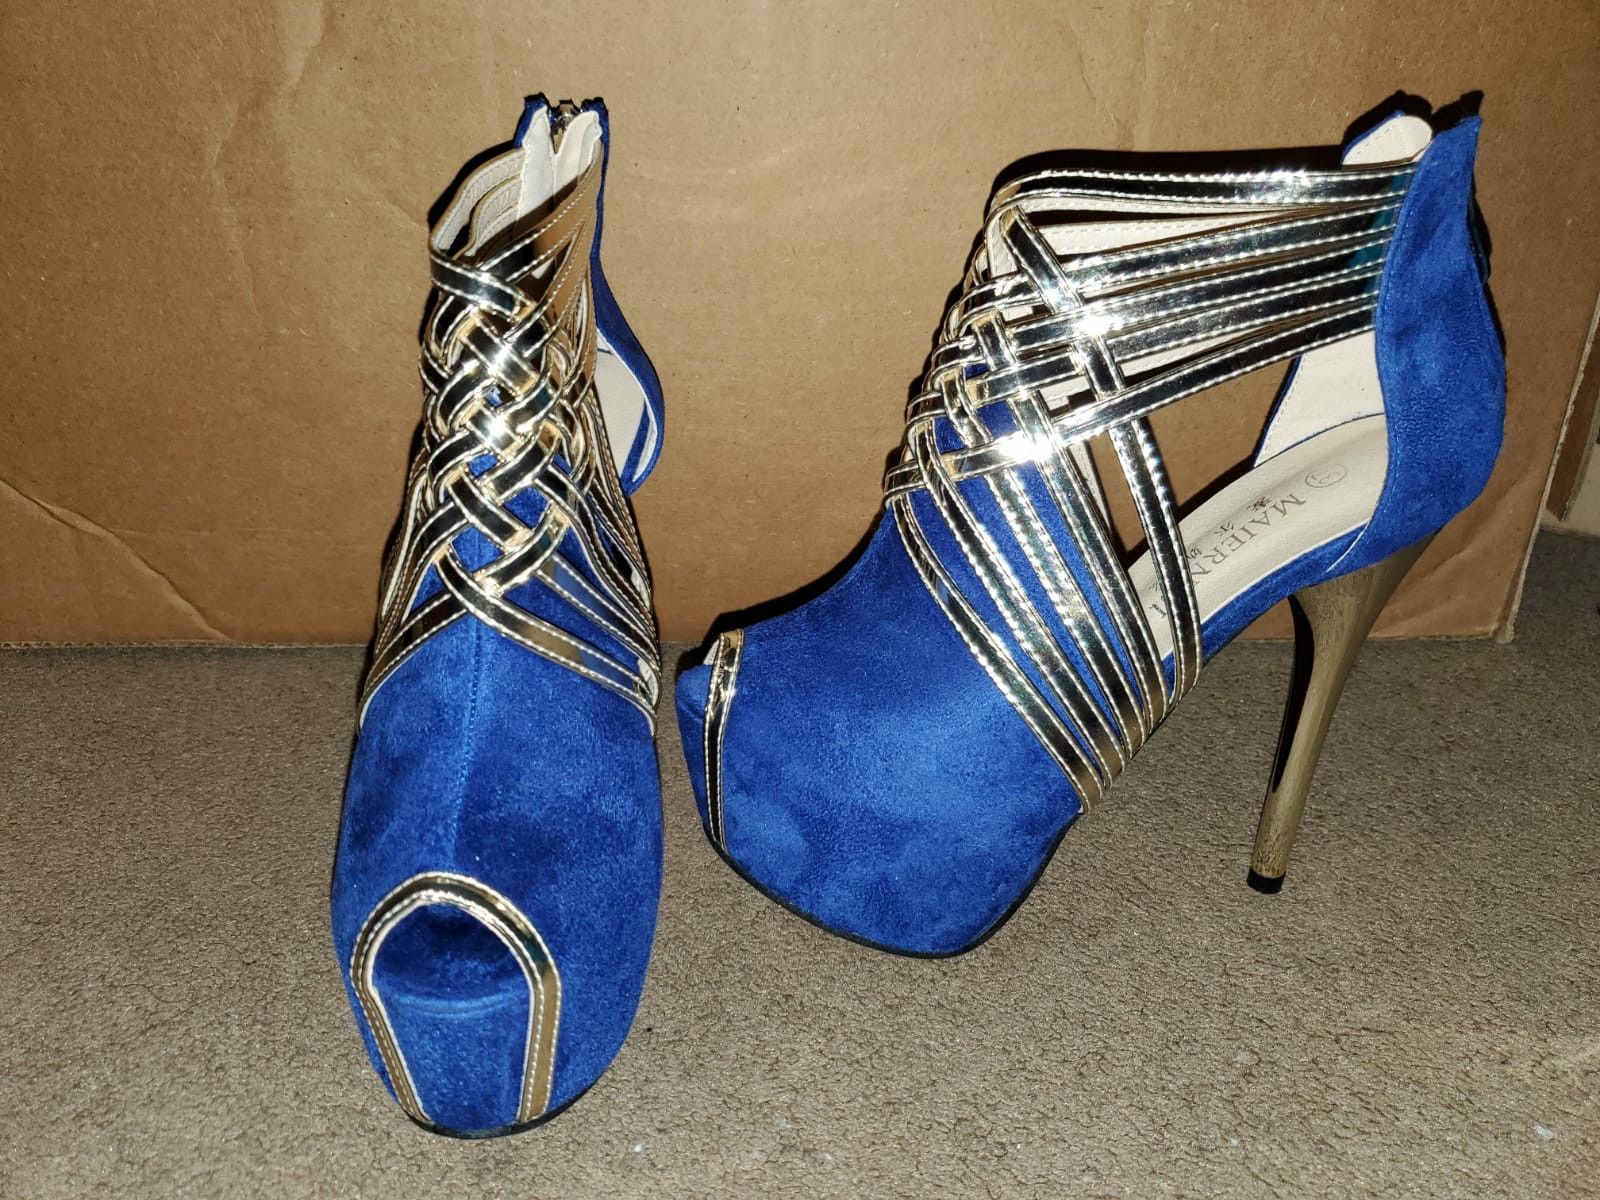 Size 7 Blue & Gold high heel